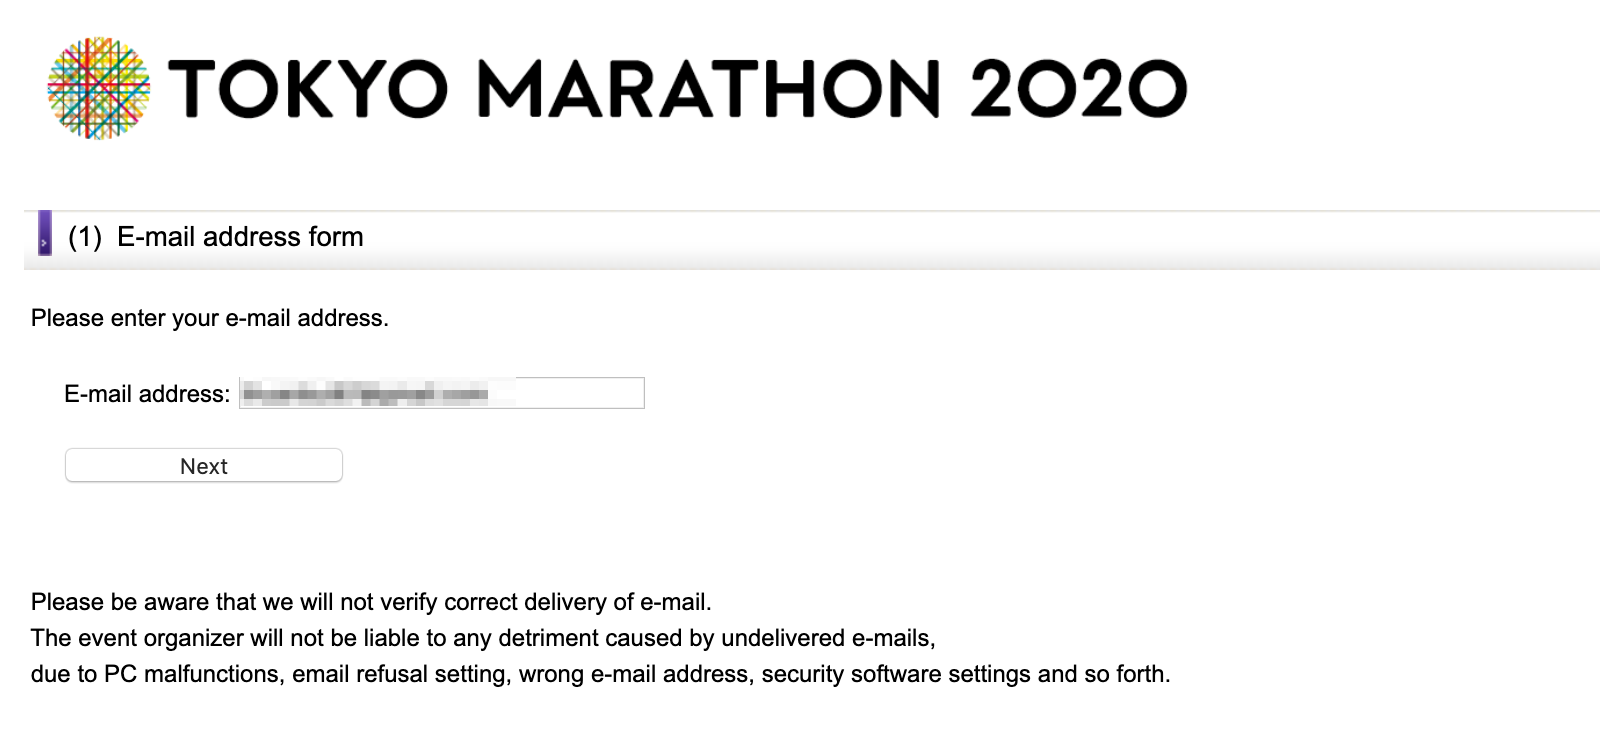 Hướng dẫn đăng ký xổ số dành suất tham gia Tokyo Marathon 2020 - dang ky tokyo marathon 2020 1